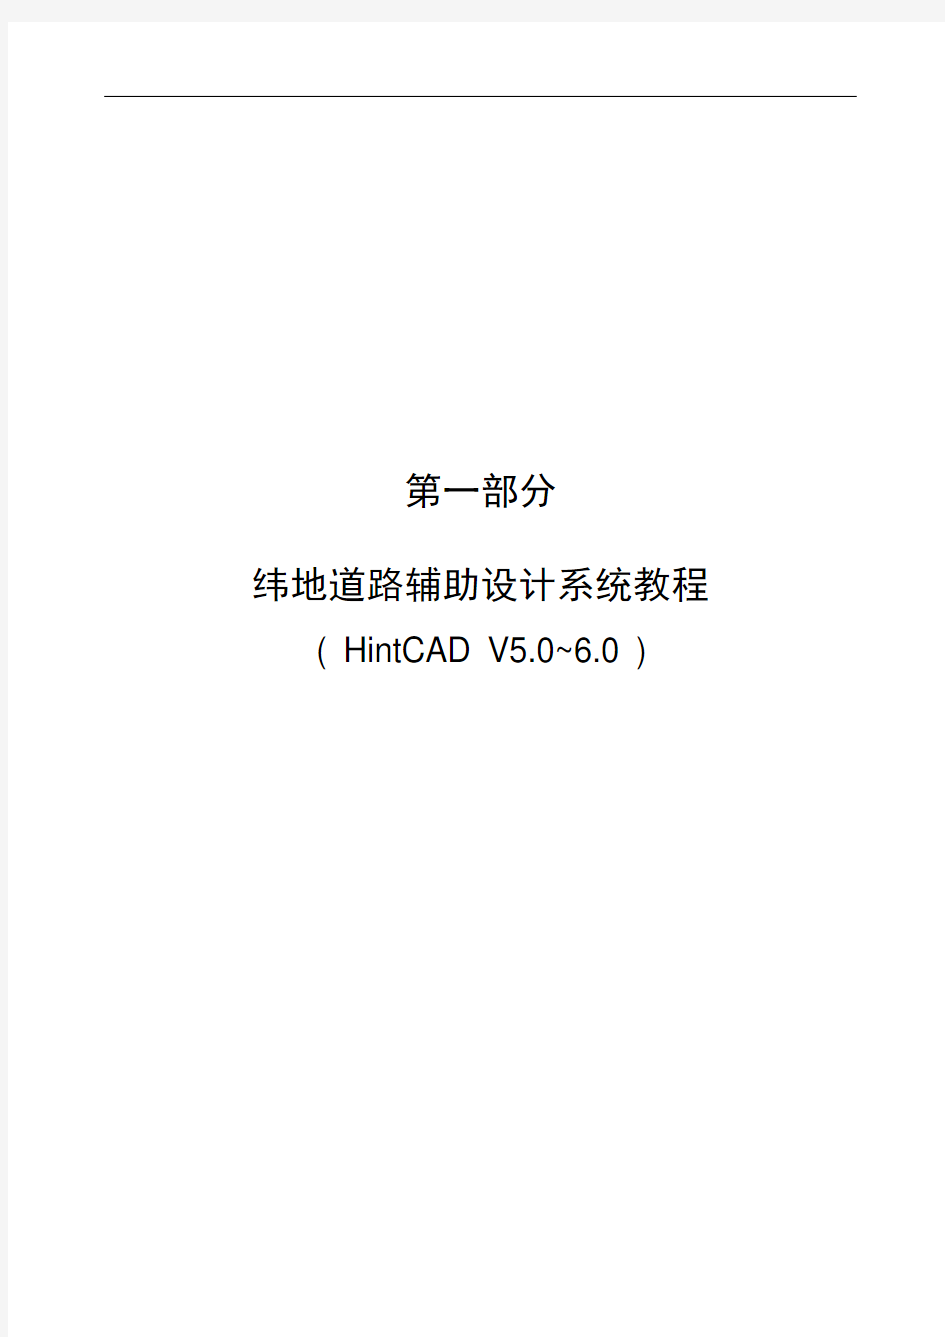 纬地道路辅助设计系统教程(HINTCAD V5.0~6.0)